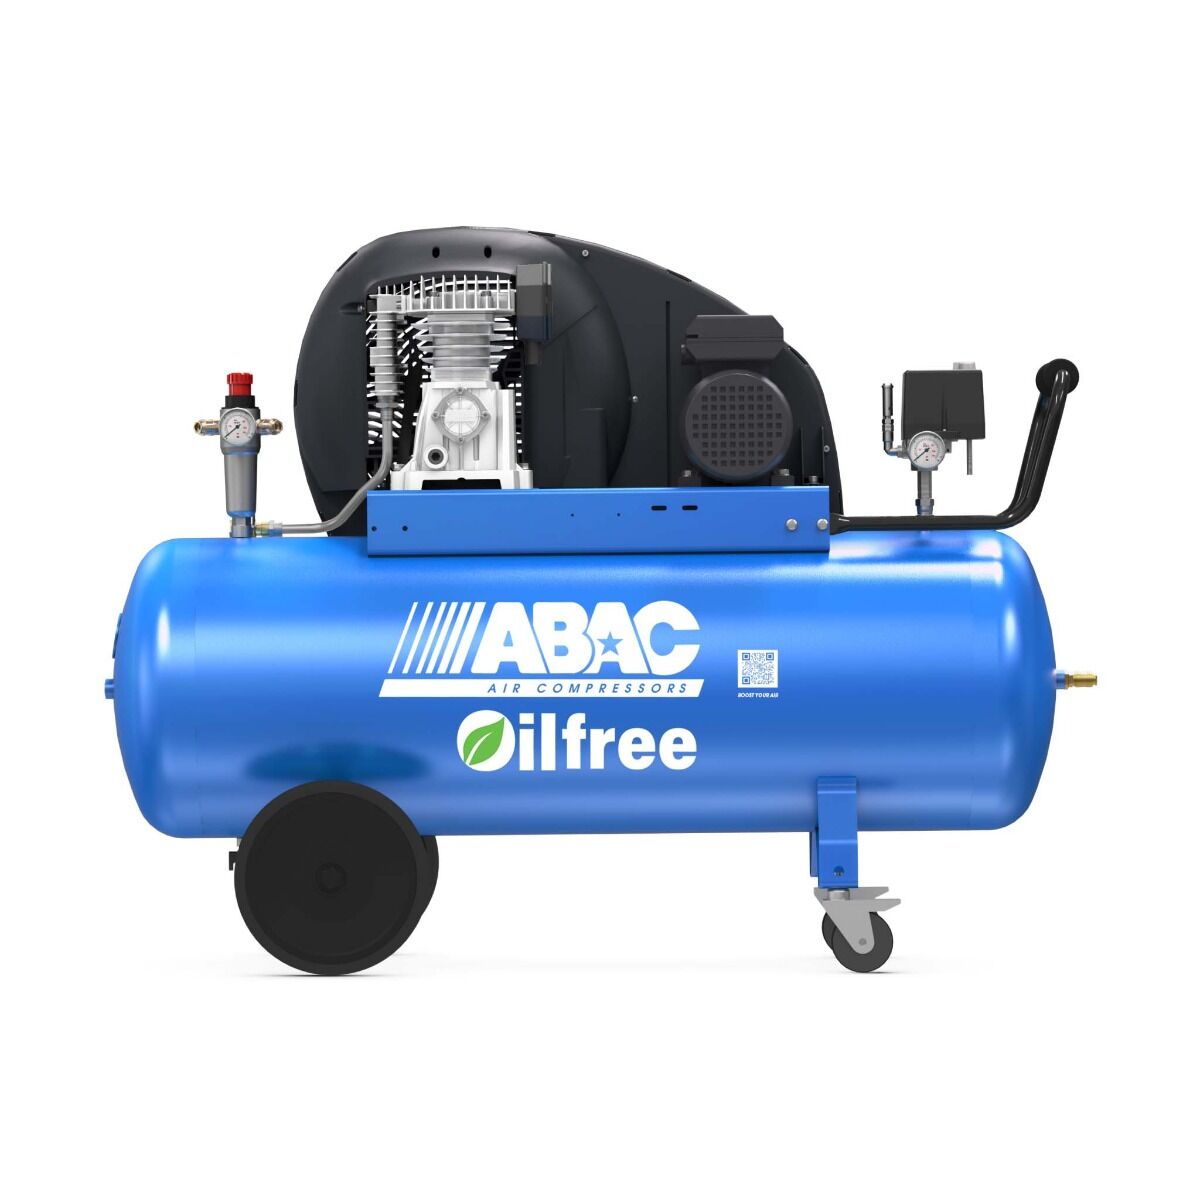 ABAC PRO A29B-0 150 CT3 compresseur sans huile 3HP 150L (400V)